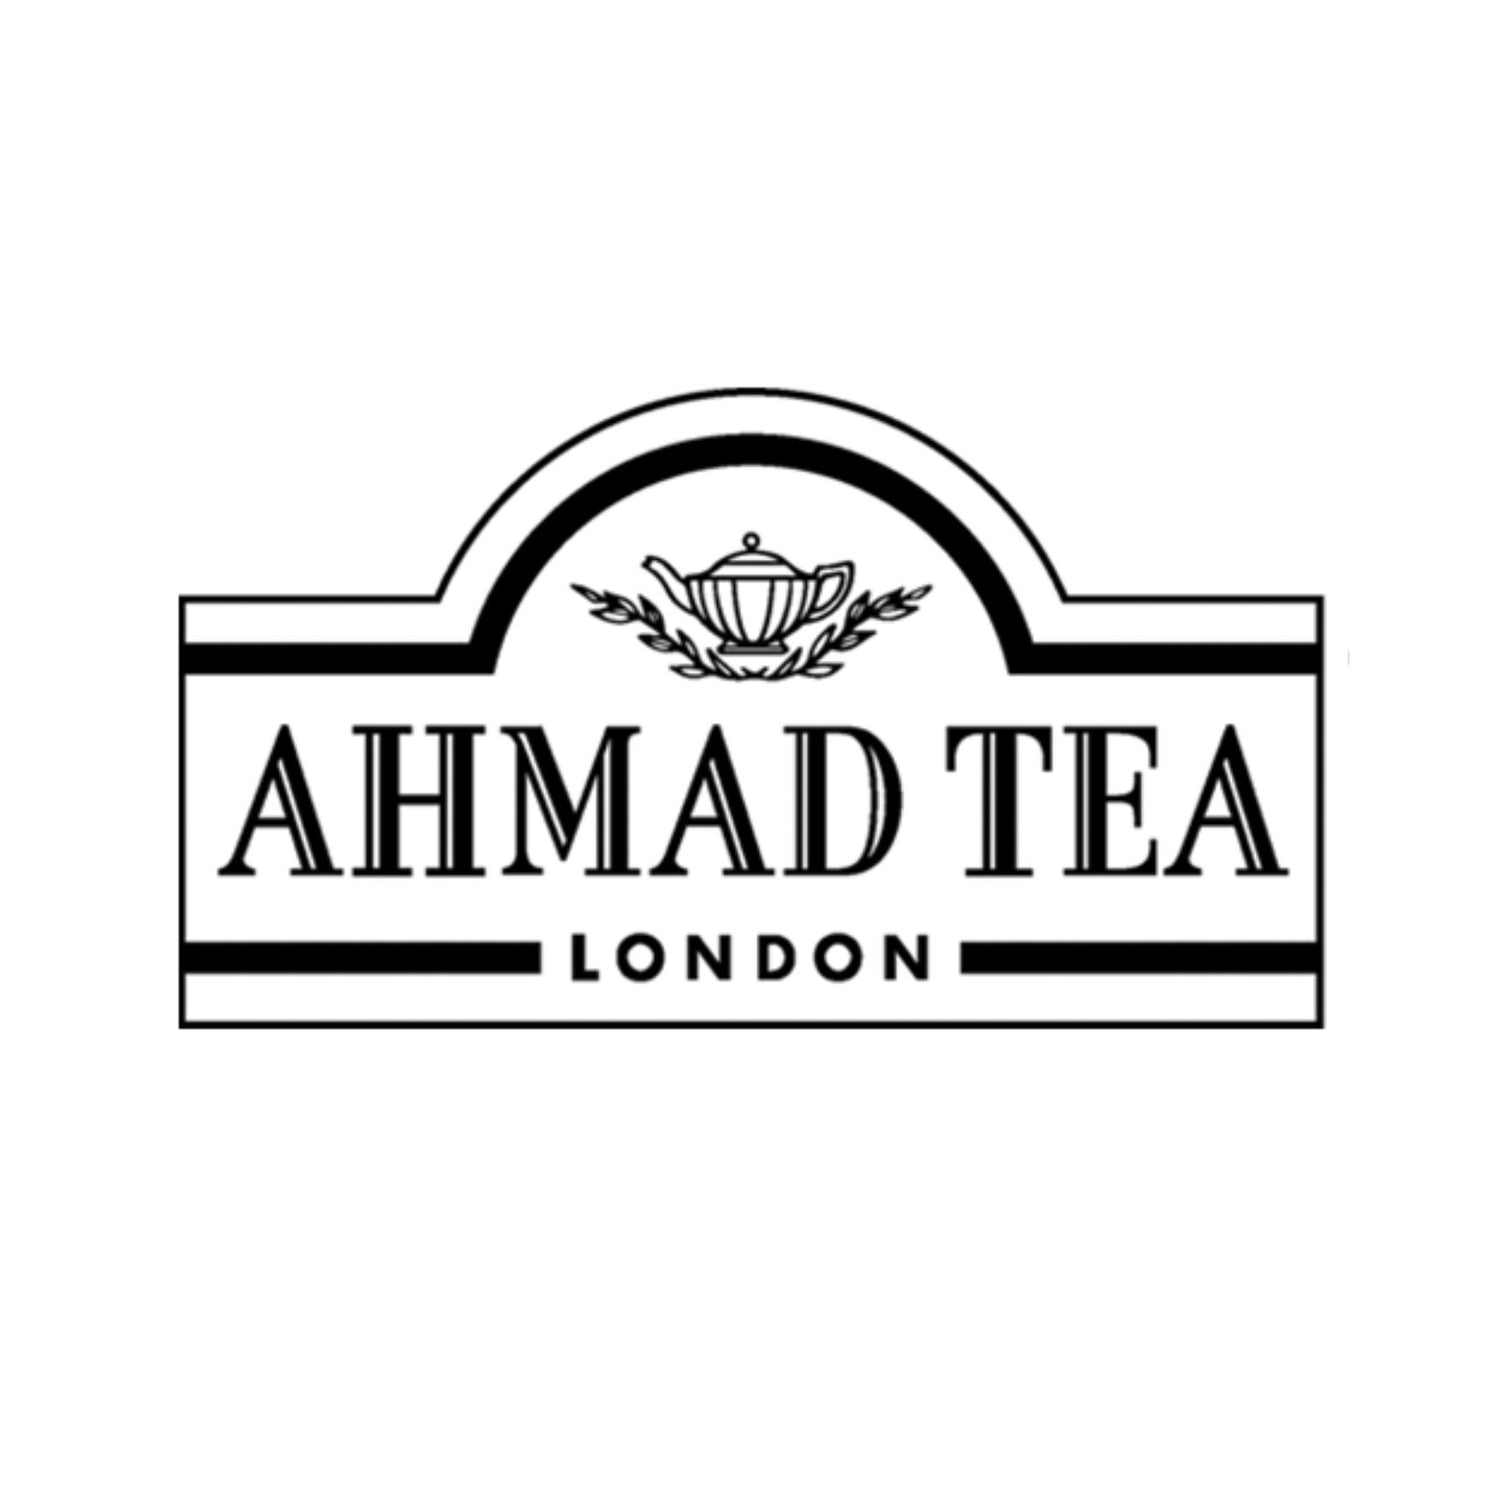 Ahmad Tea